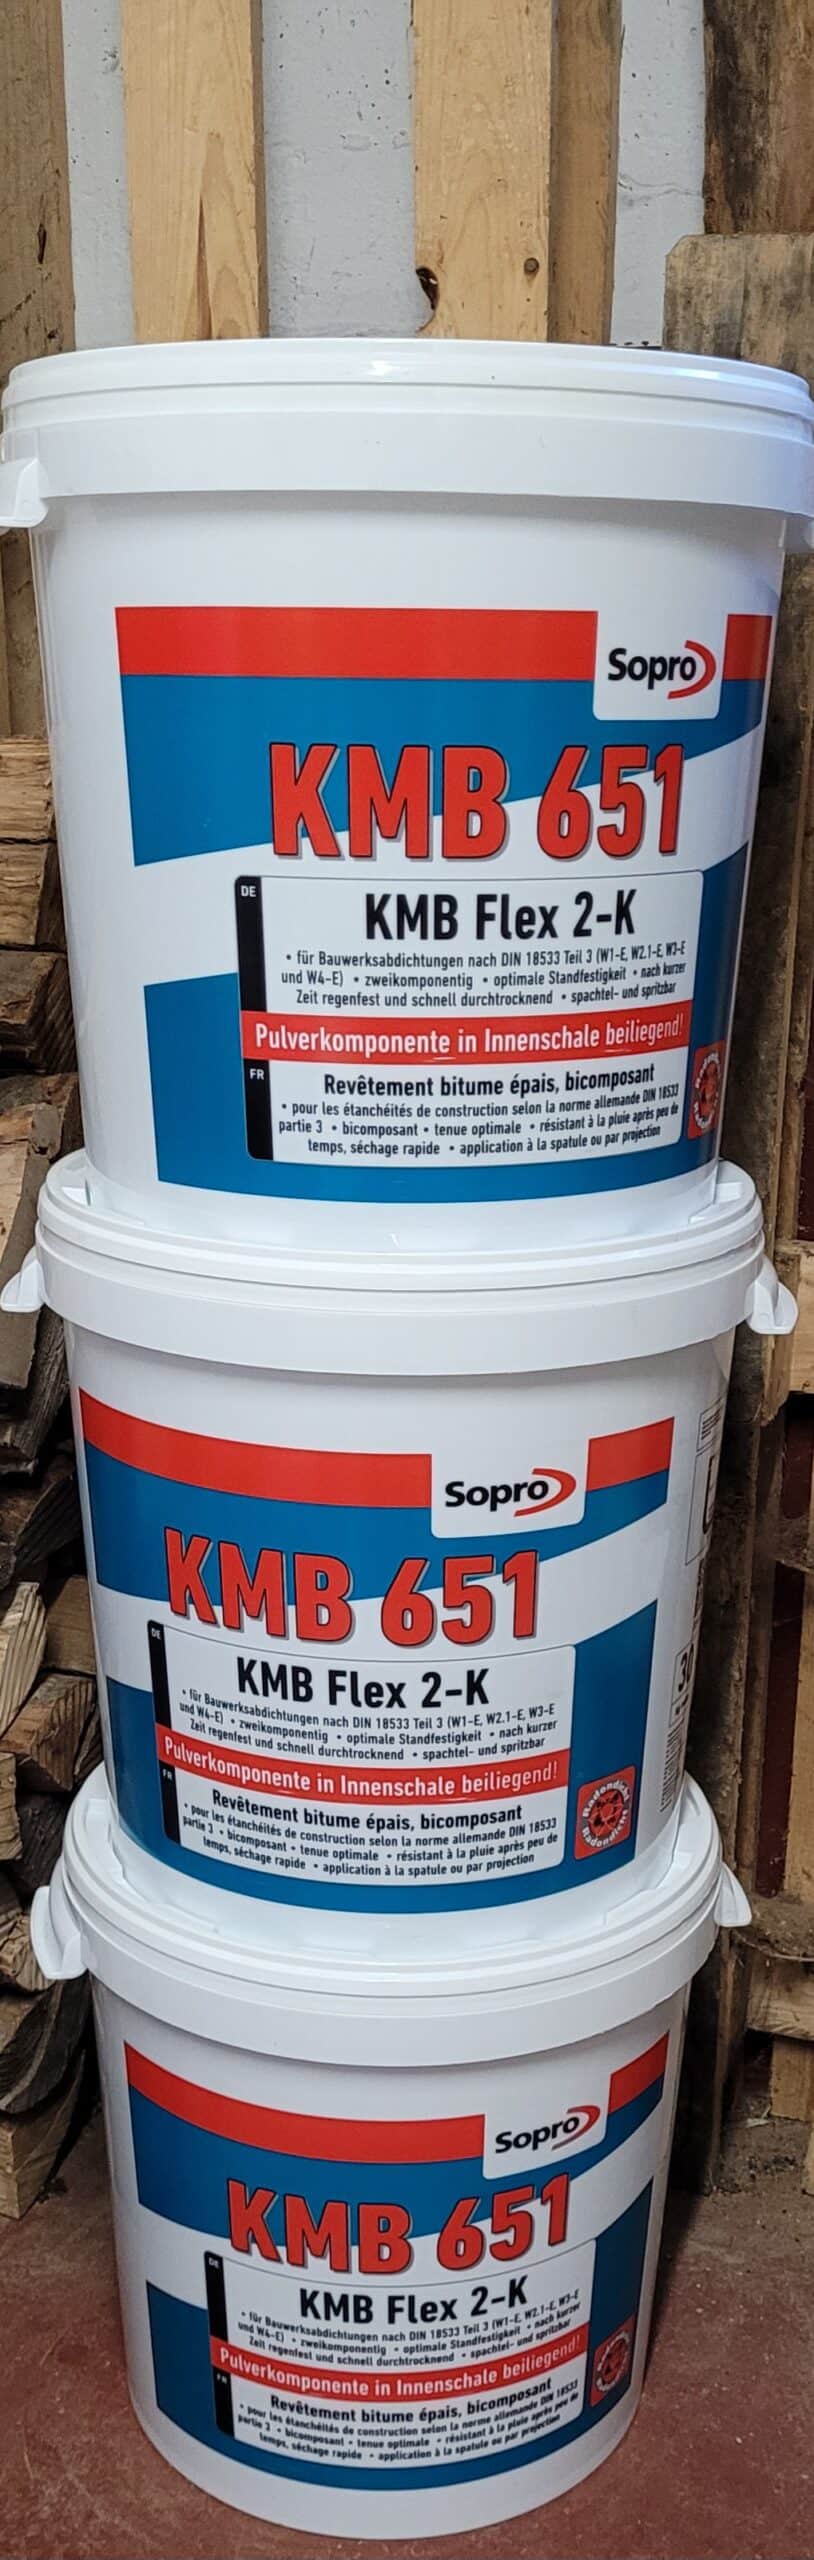 Sopro KMB Flex 2-K 651 Bitumen-Dickbeschichtung